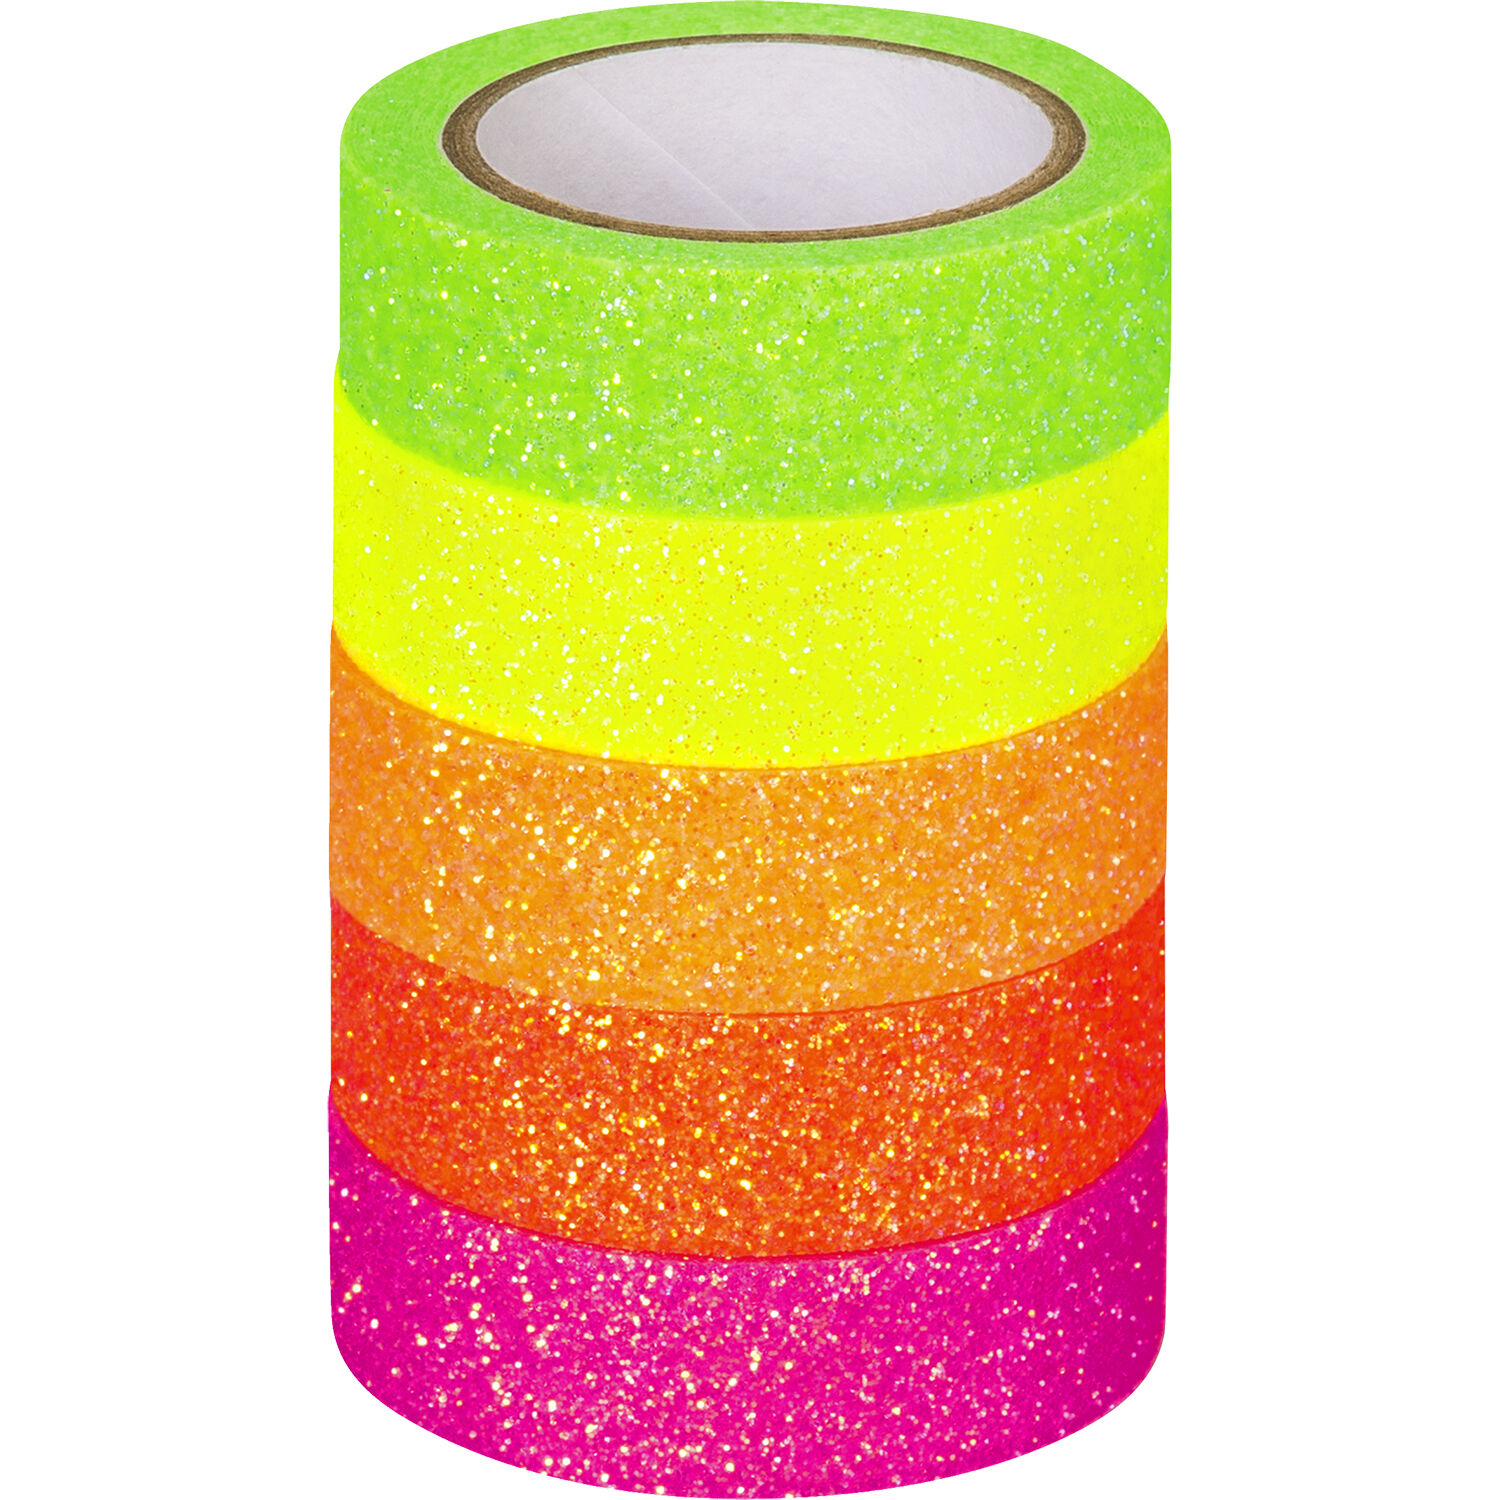 NEU Deko Tape / Klebeband, 5 Rollen, Neon Regenbogen Glitter - Washi Tape,  Fabric- & Glitter-Tape Klebeband, Sticker & Co. Papiere & Co. Produkte 